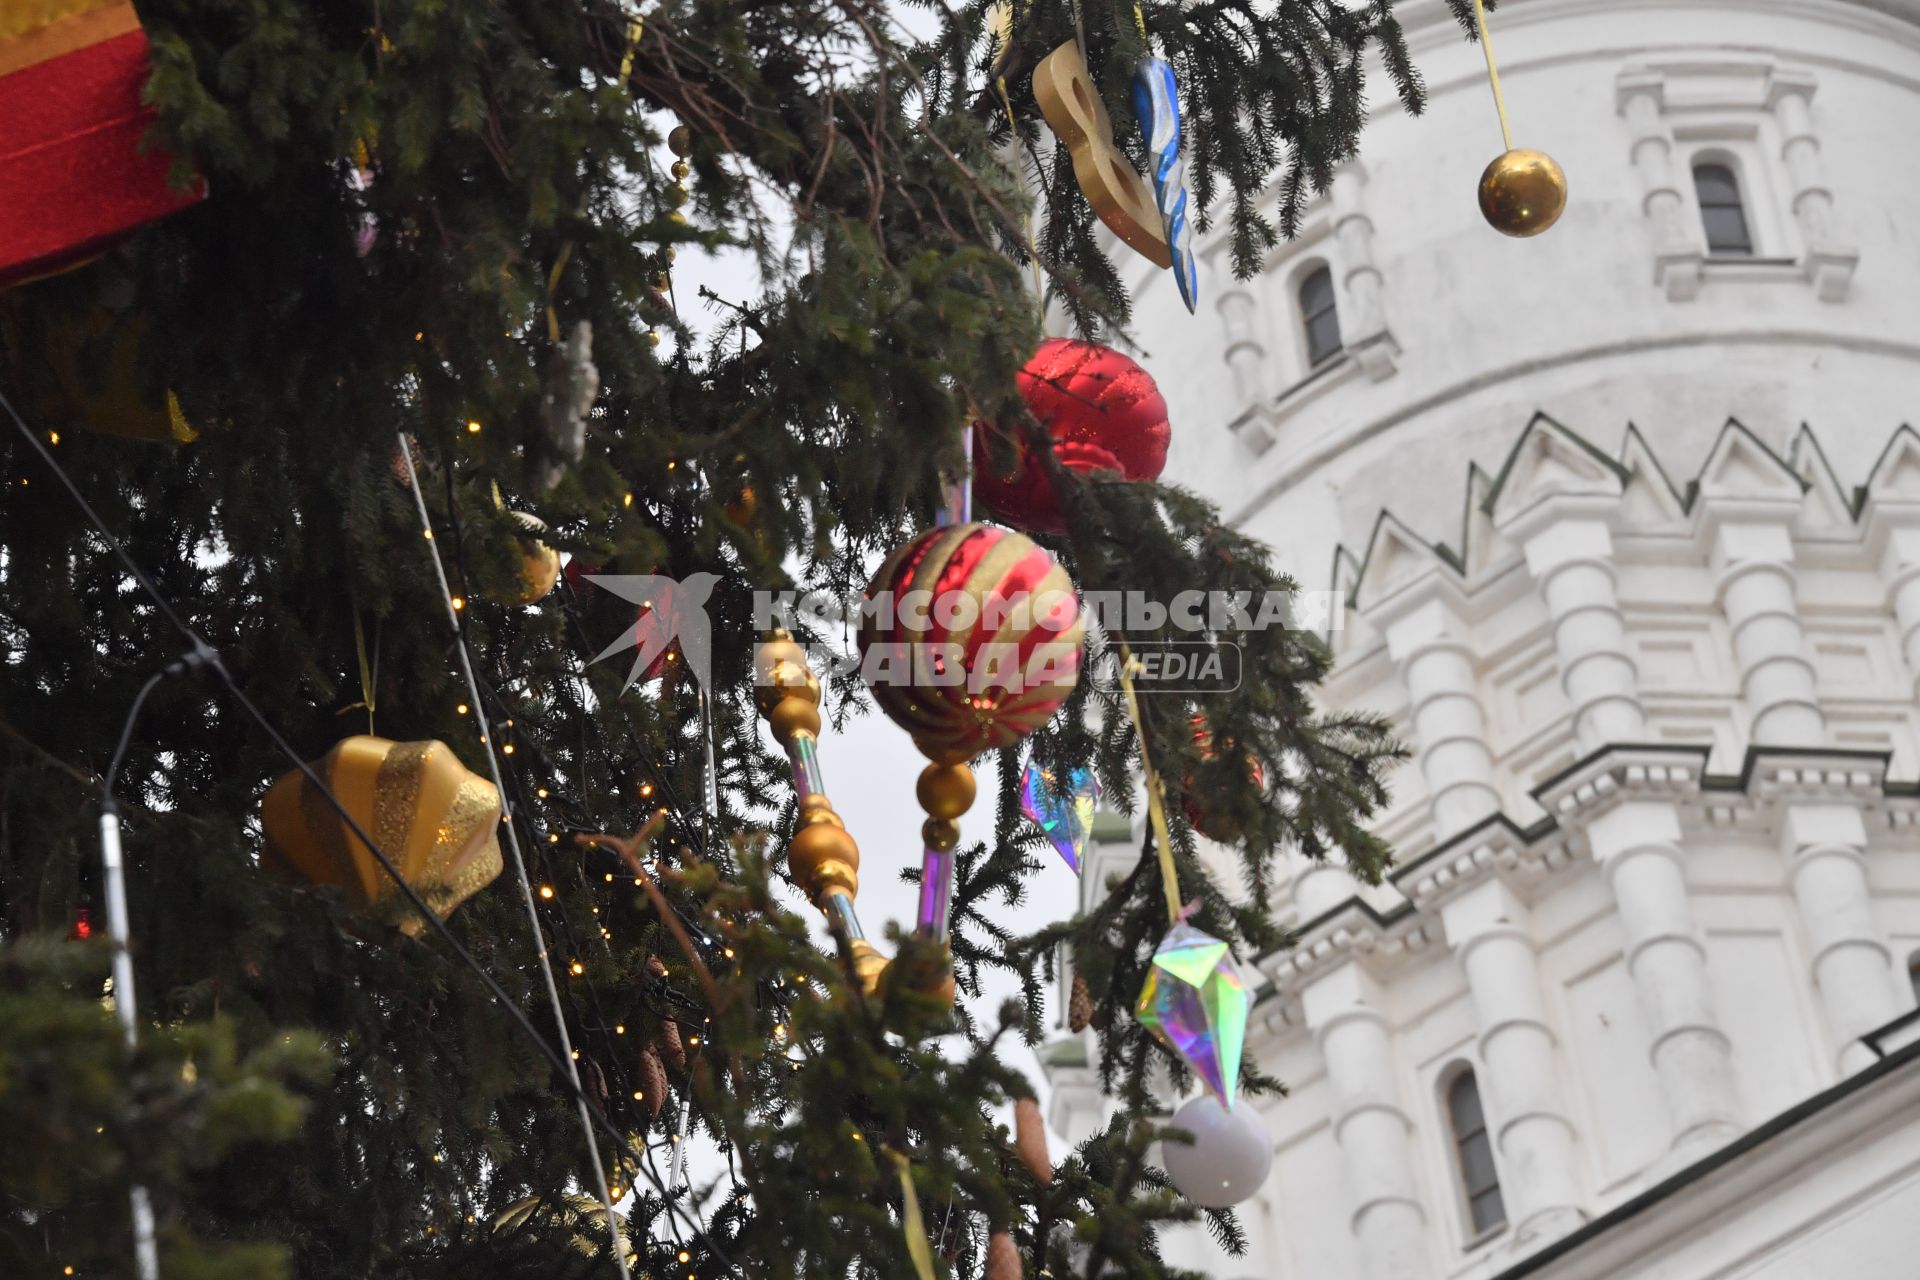 Главная новогодняя ель России в Кремле